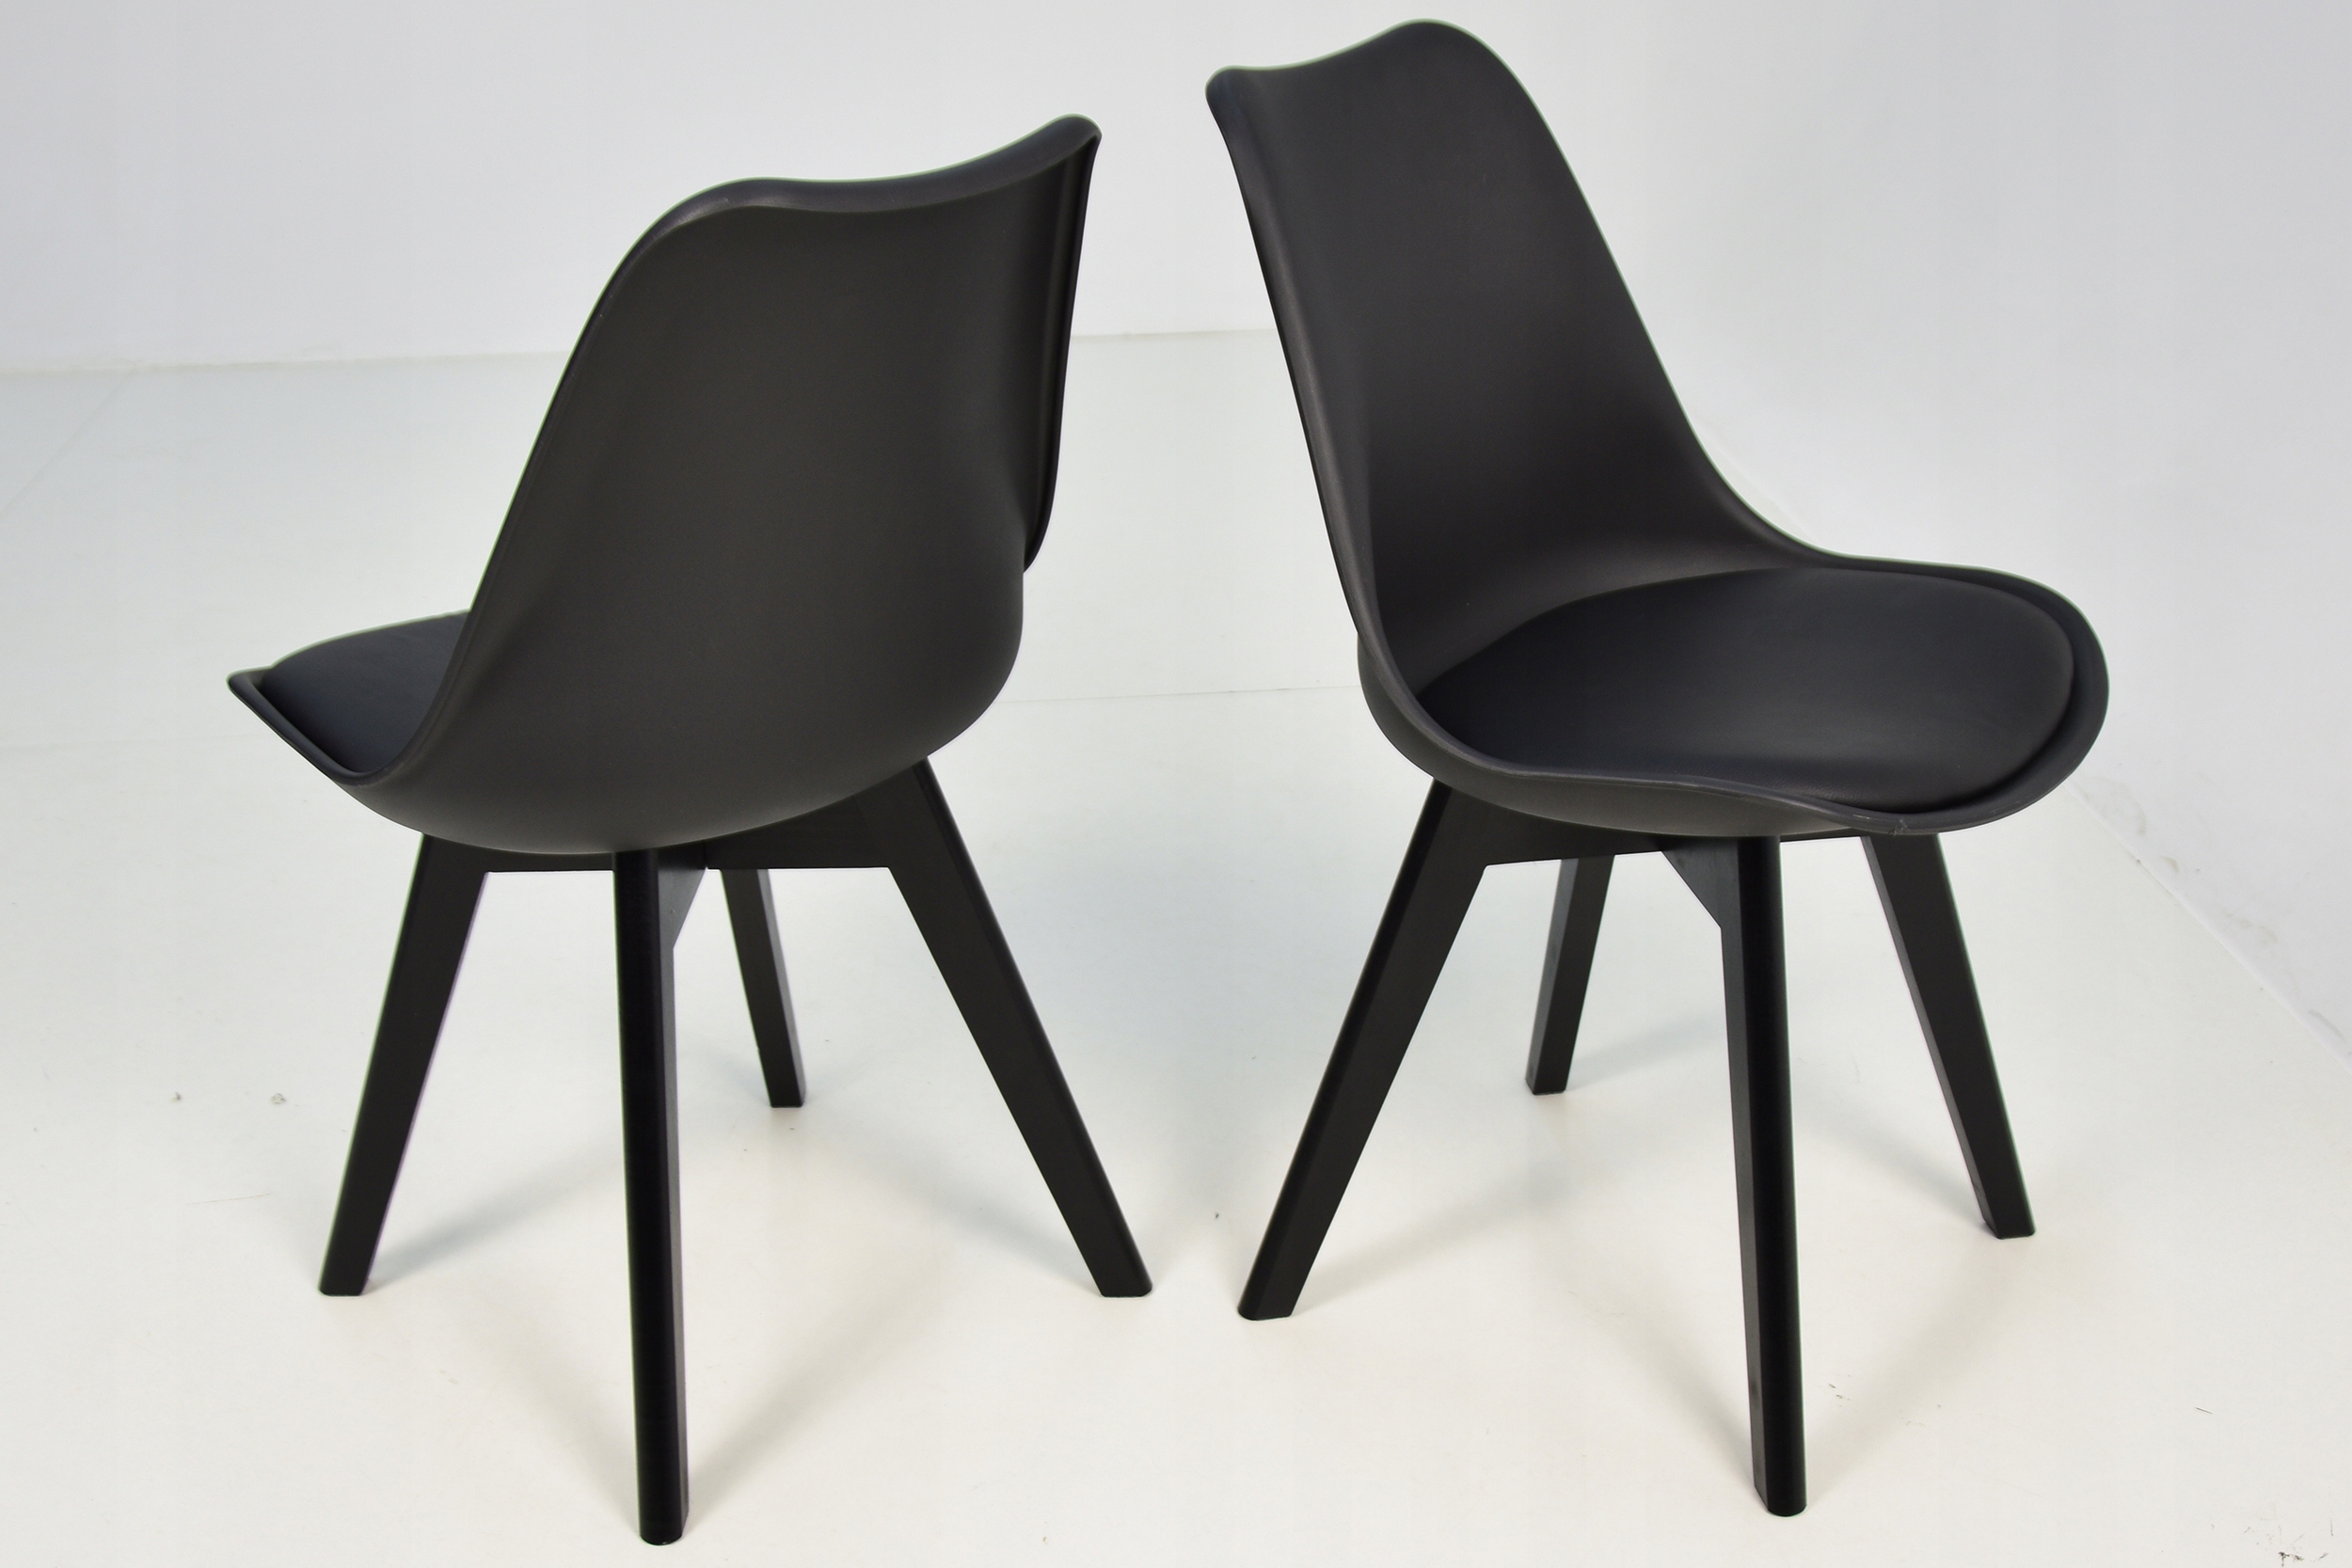 4 скандинавских стула + круглый стол 100 см Количество стульев в комплекте 4